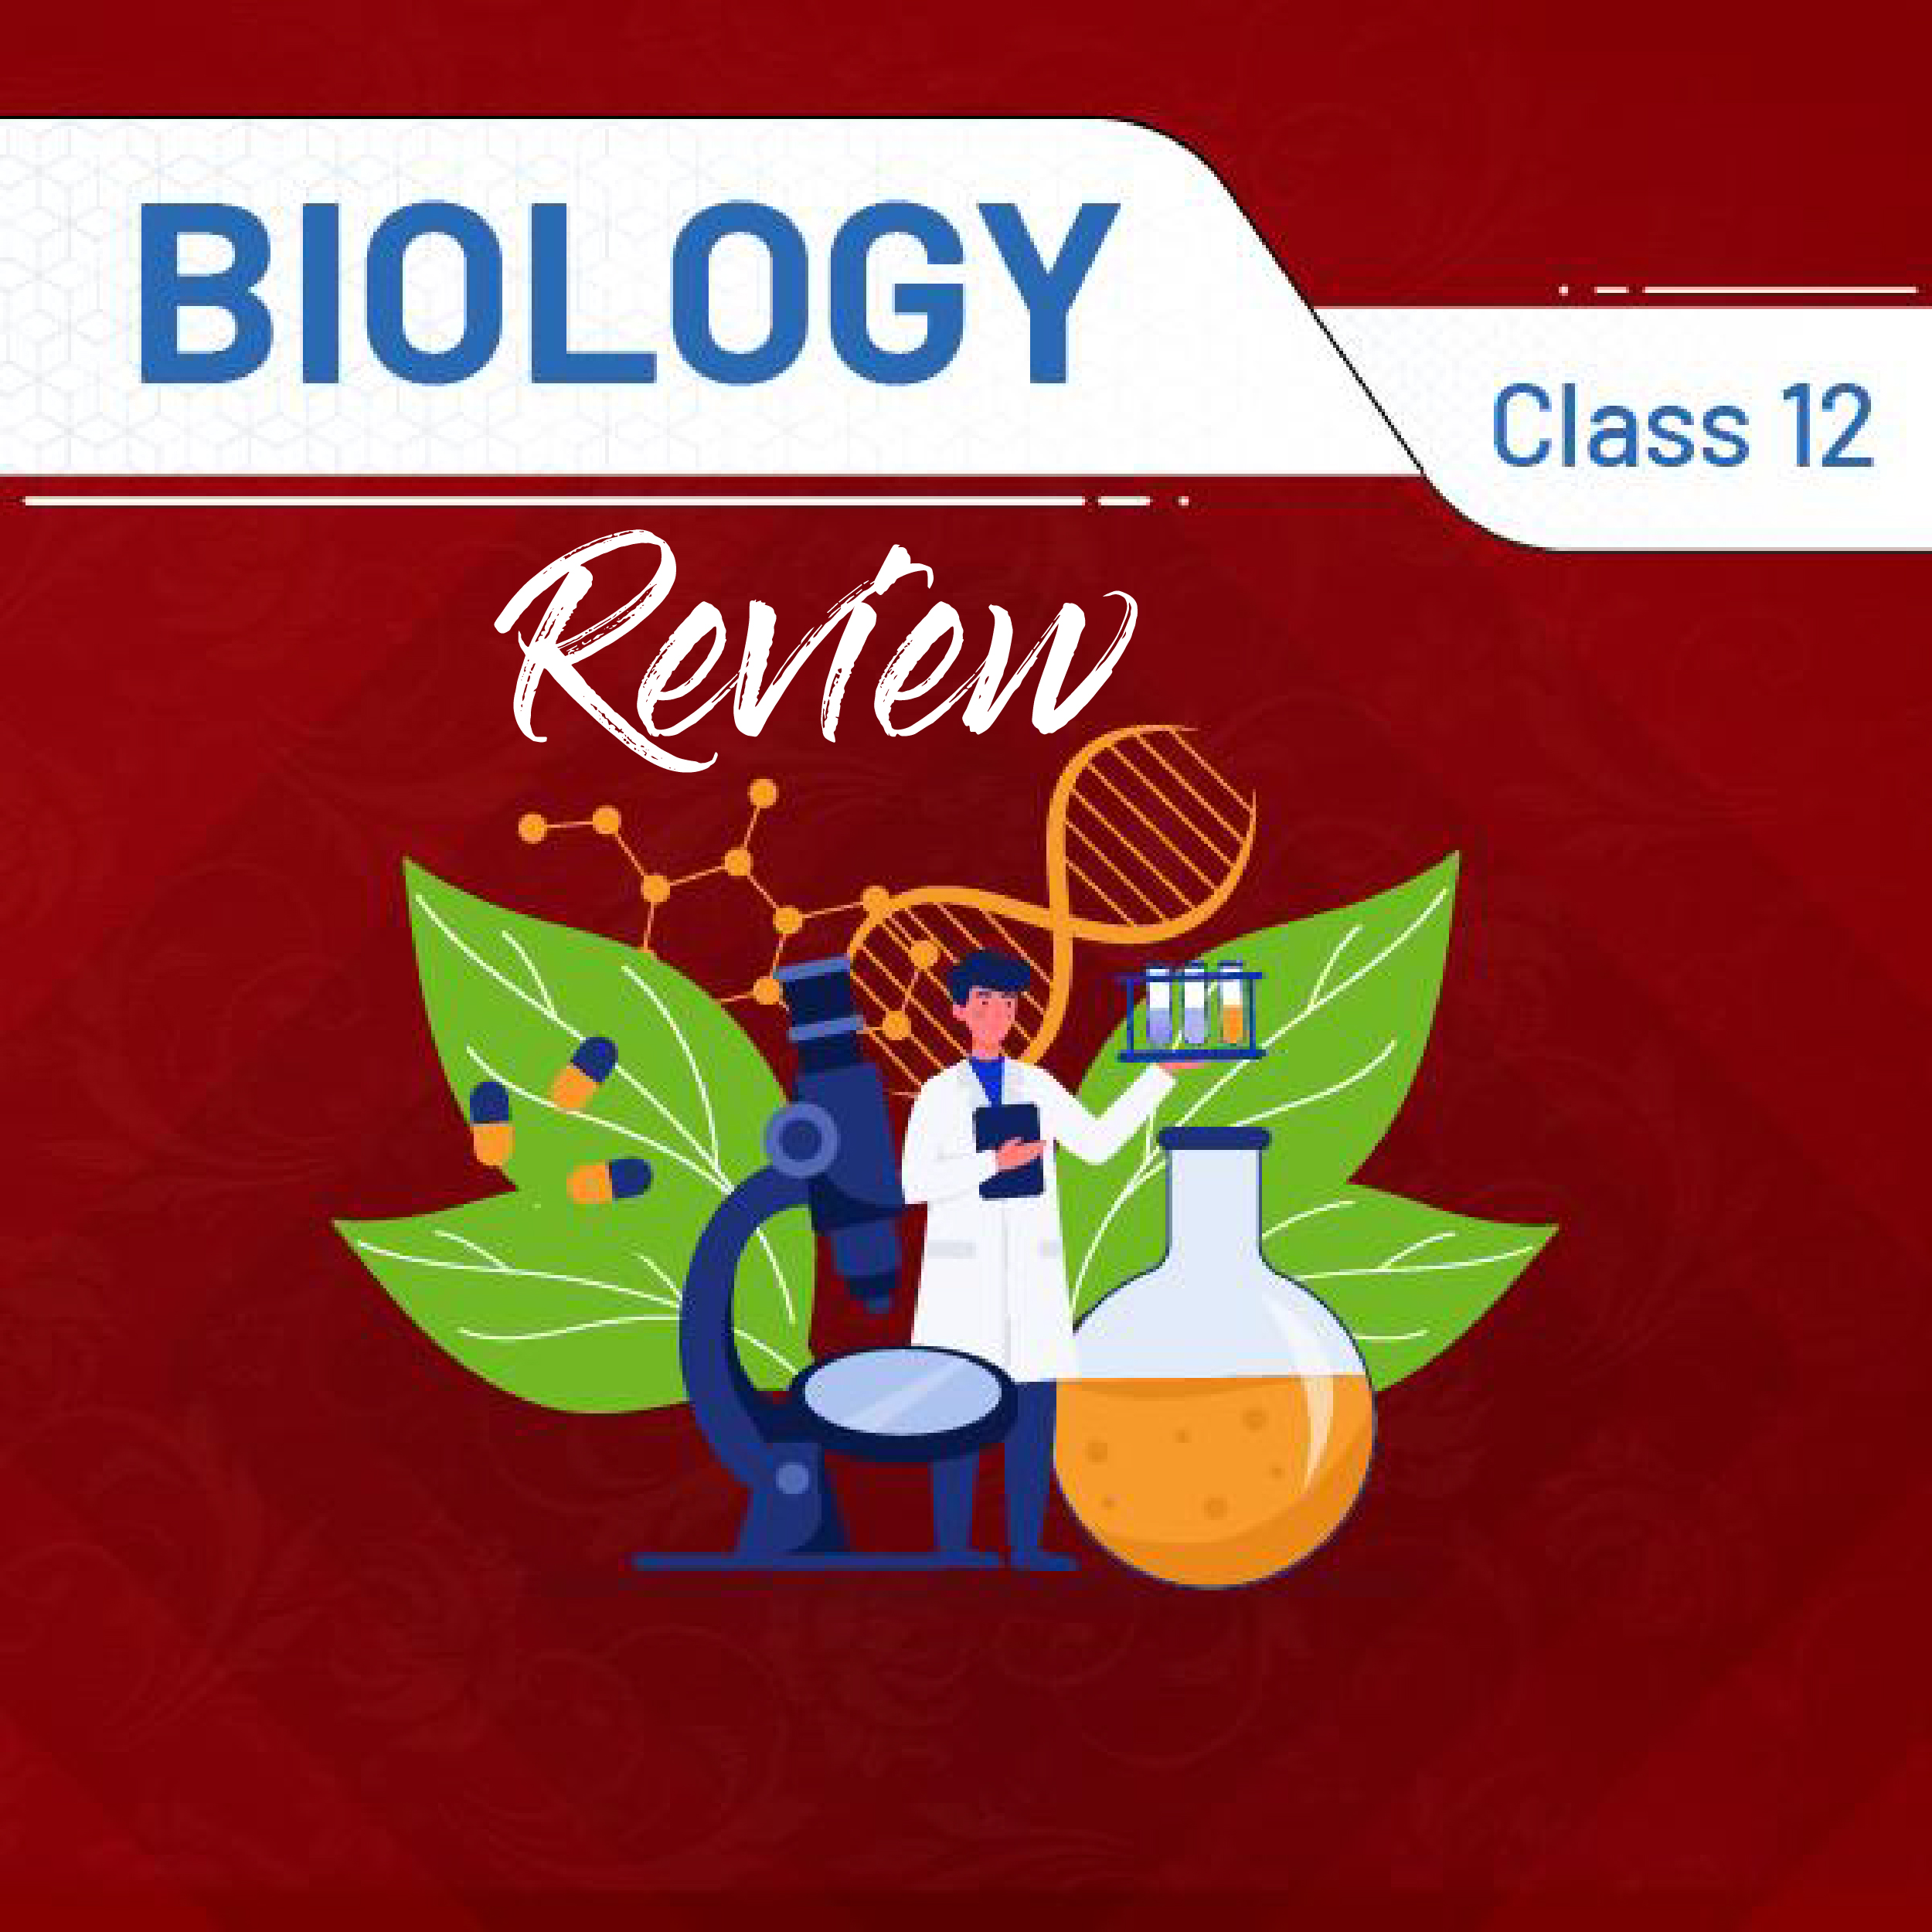 Biology Class 12 Review